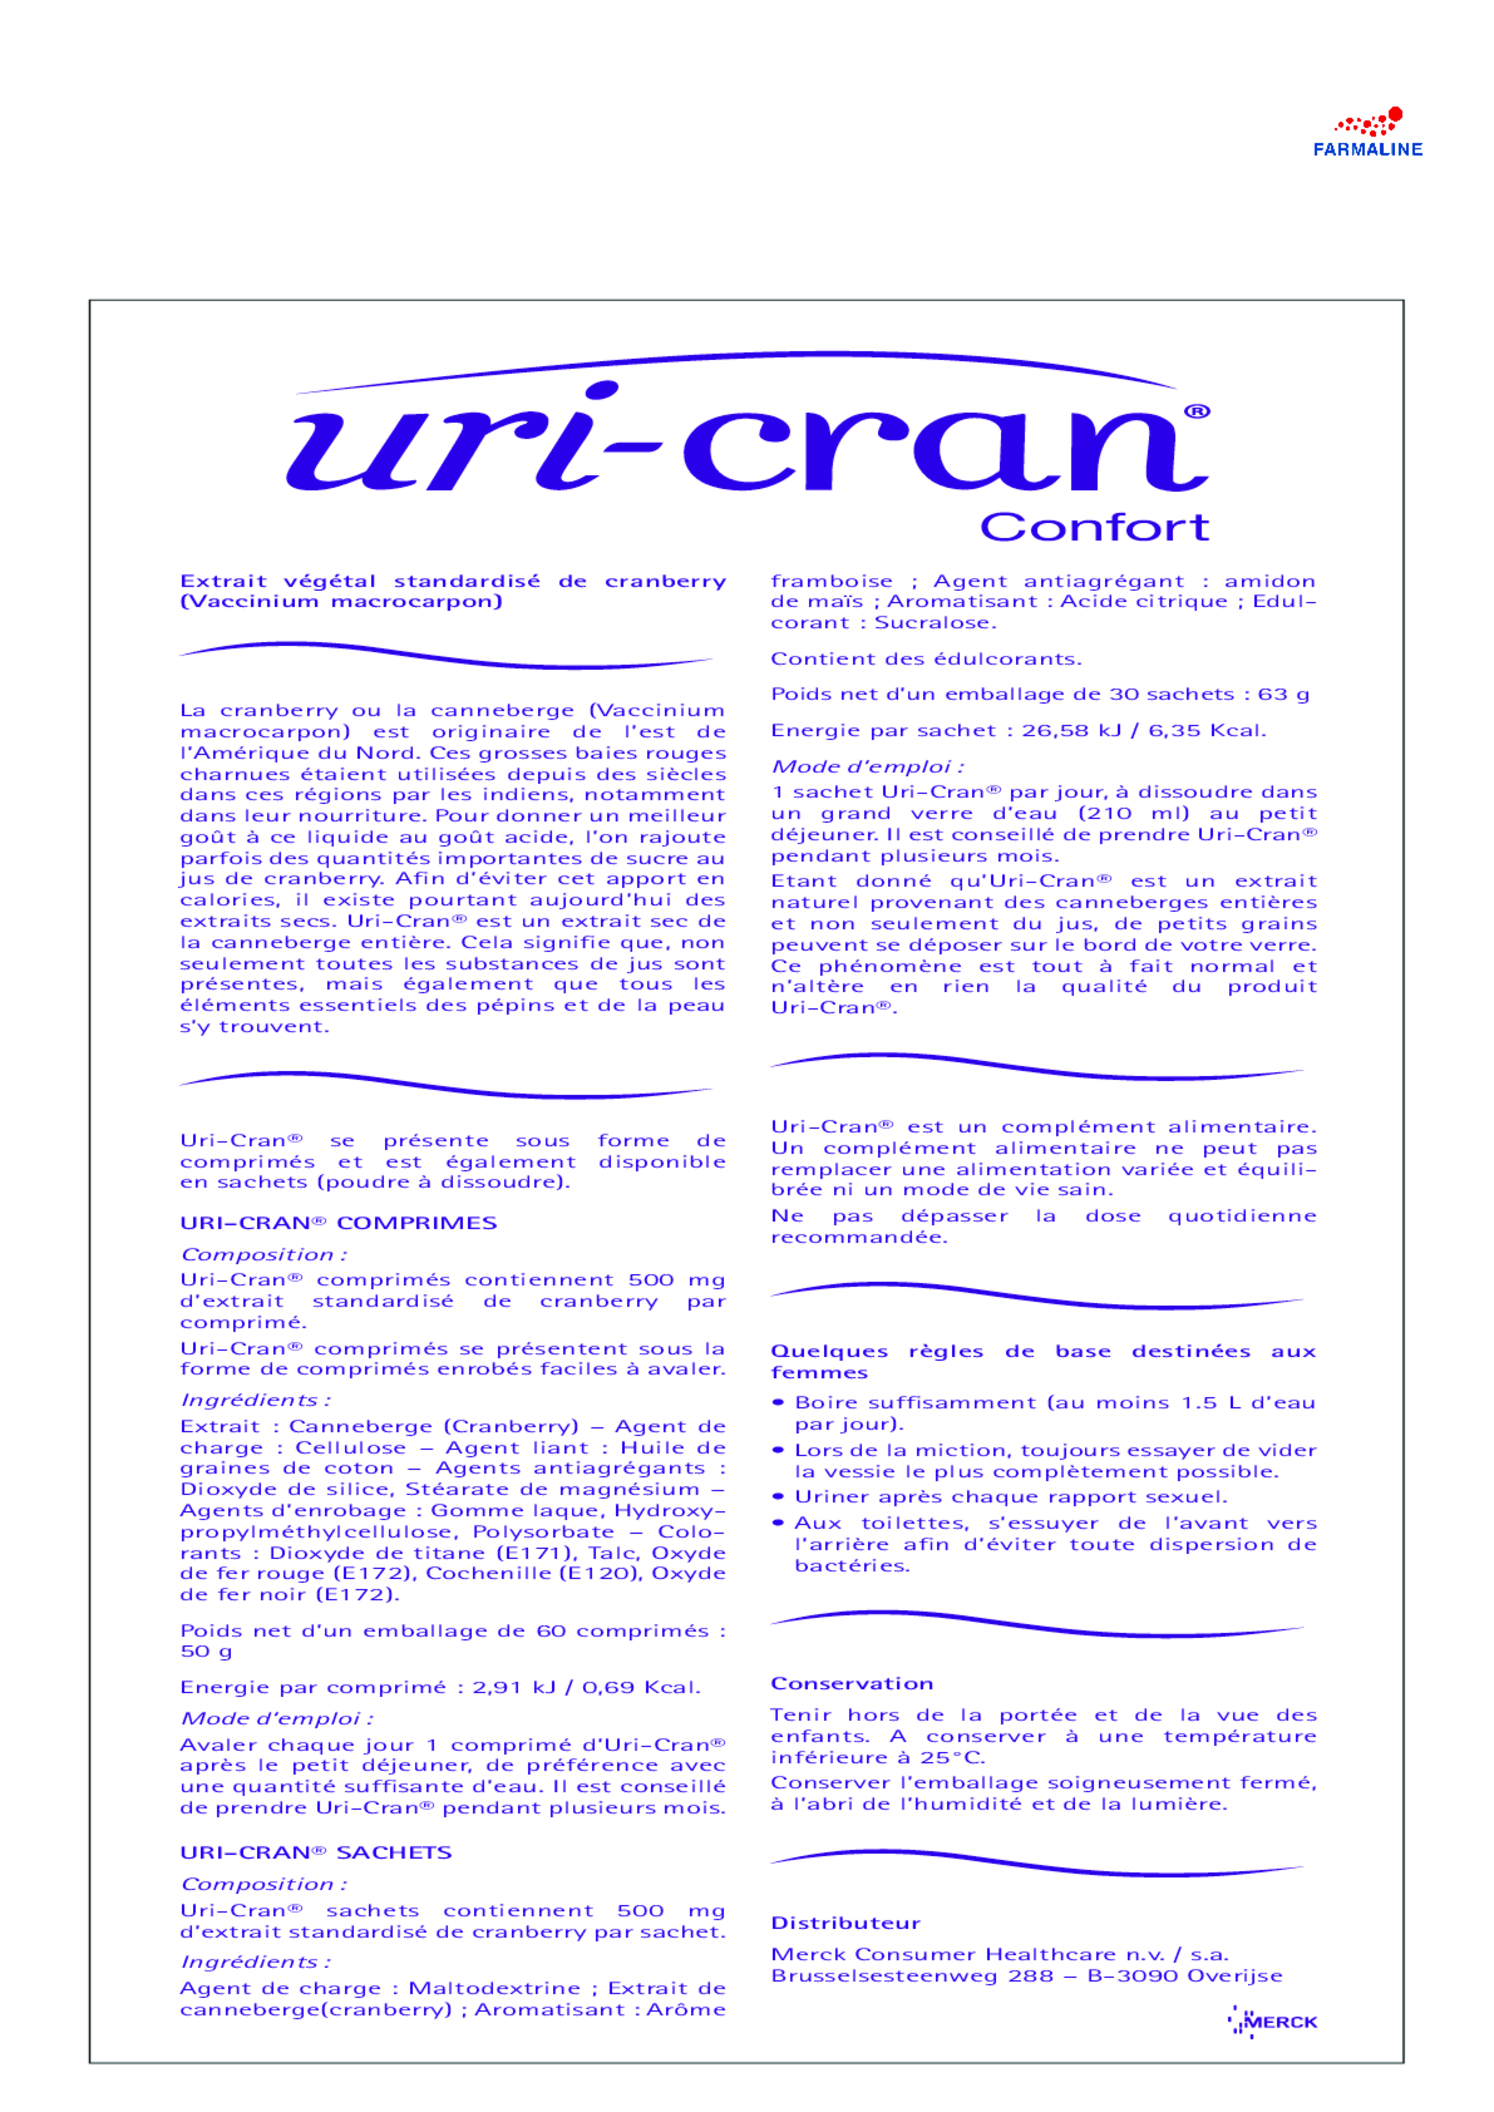 U-Cran Comfort Cranberry Tabletten afbeelding van document #2, gebruiksaanwijzing